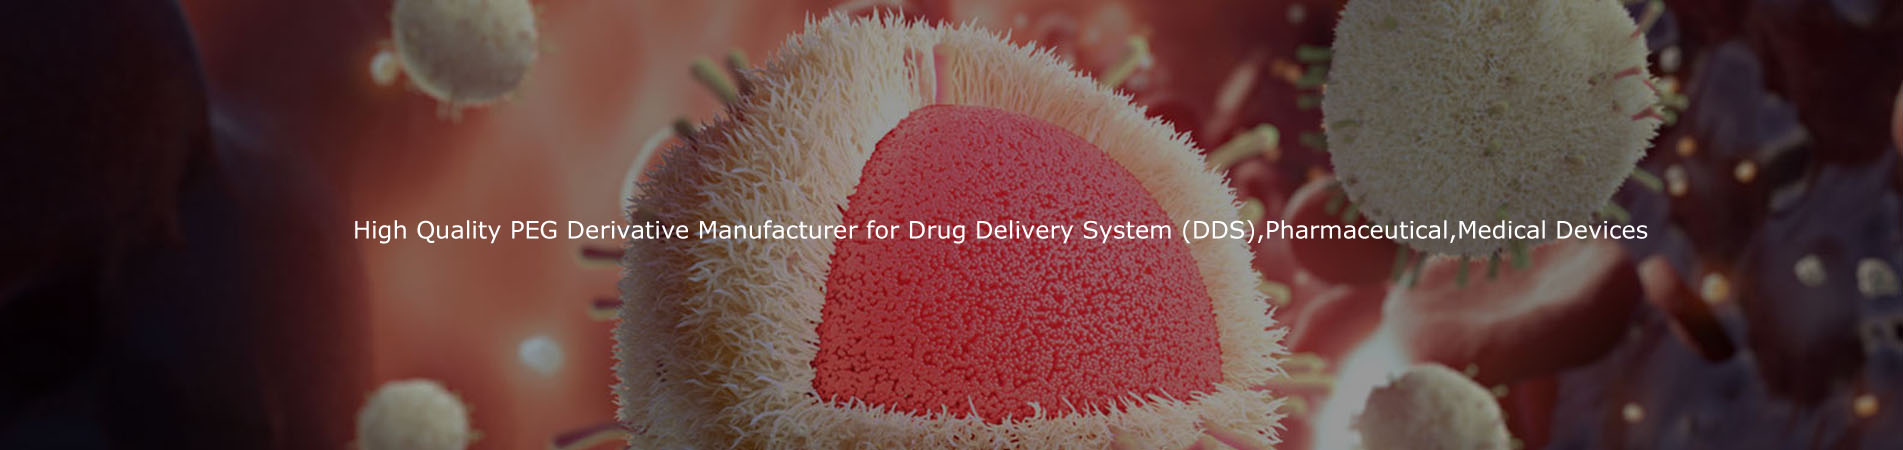 عالية الجودة الشركة المصنعة المشتقات PEG لنظام توصيل المخدرات (DDS)، الأدوية، الأجهزة الطبية